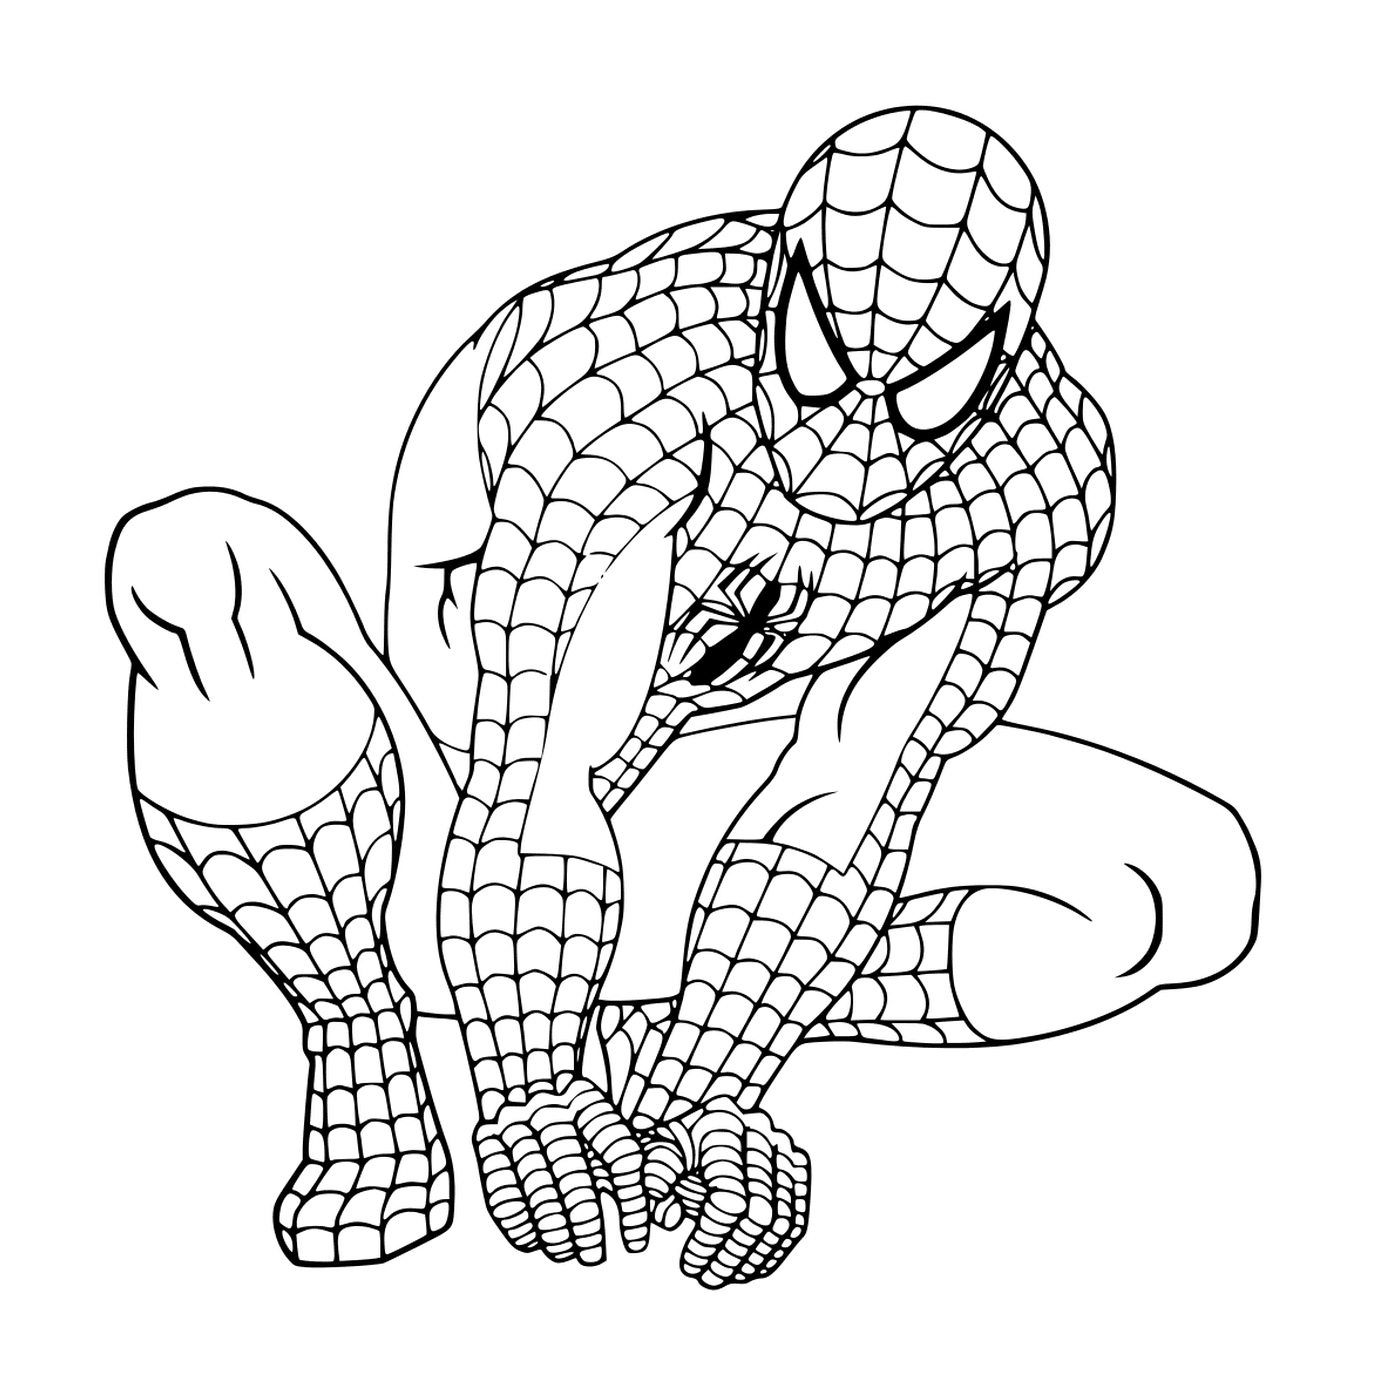   Super-héros fictif Spider-Man 